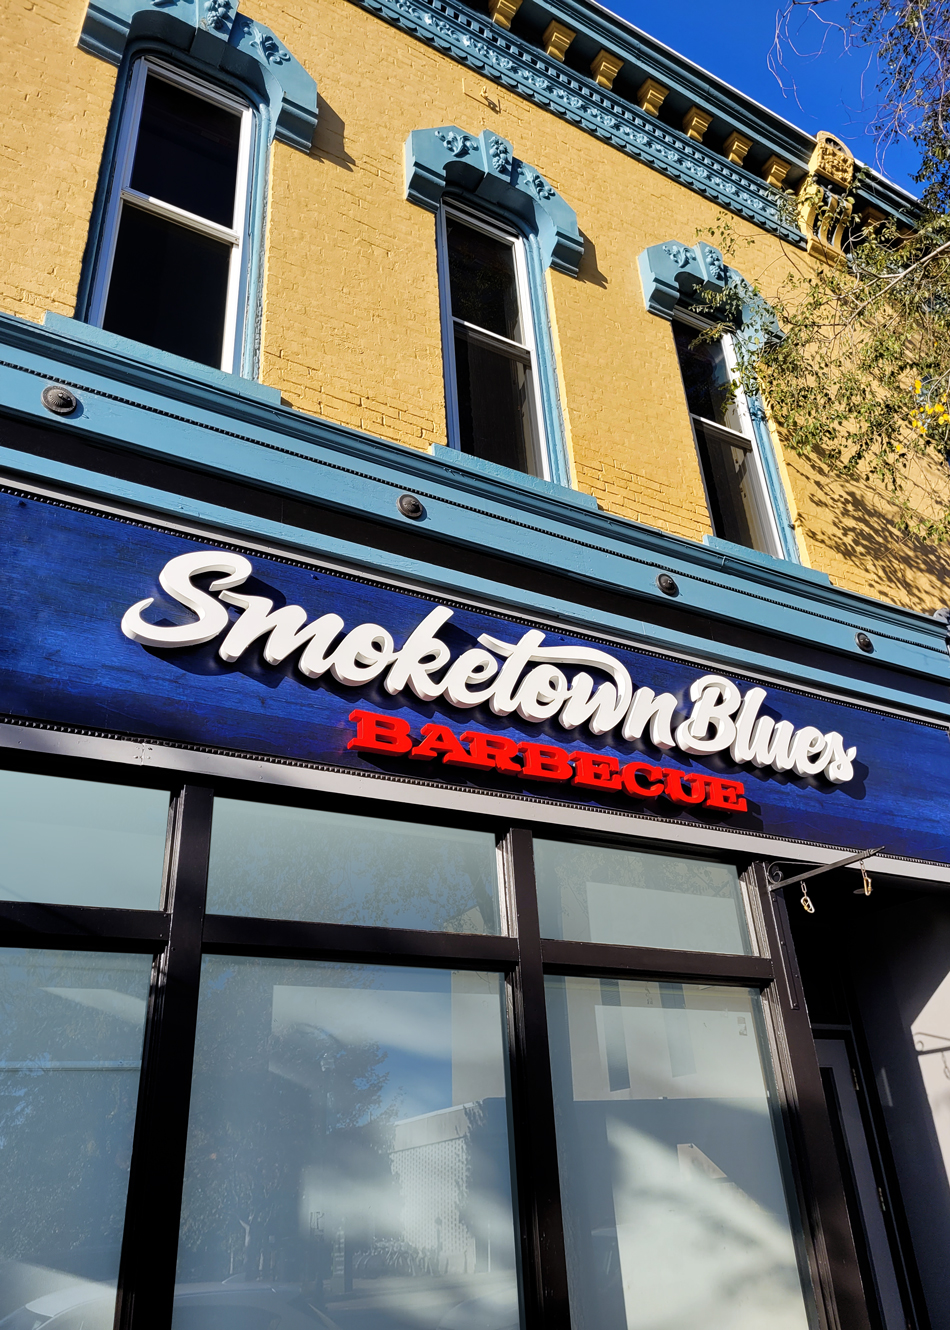 Smoketown Blues BBQ building sign logo at angle